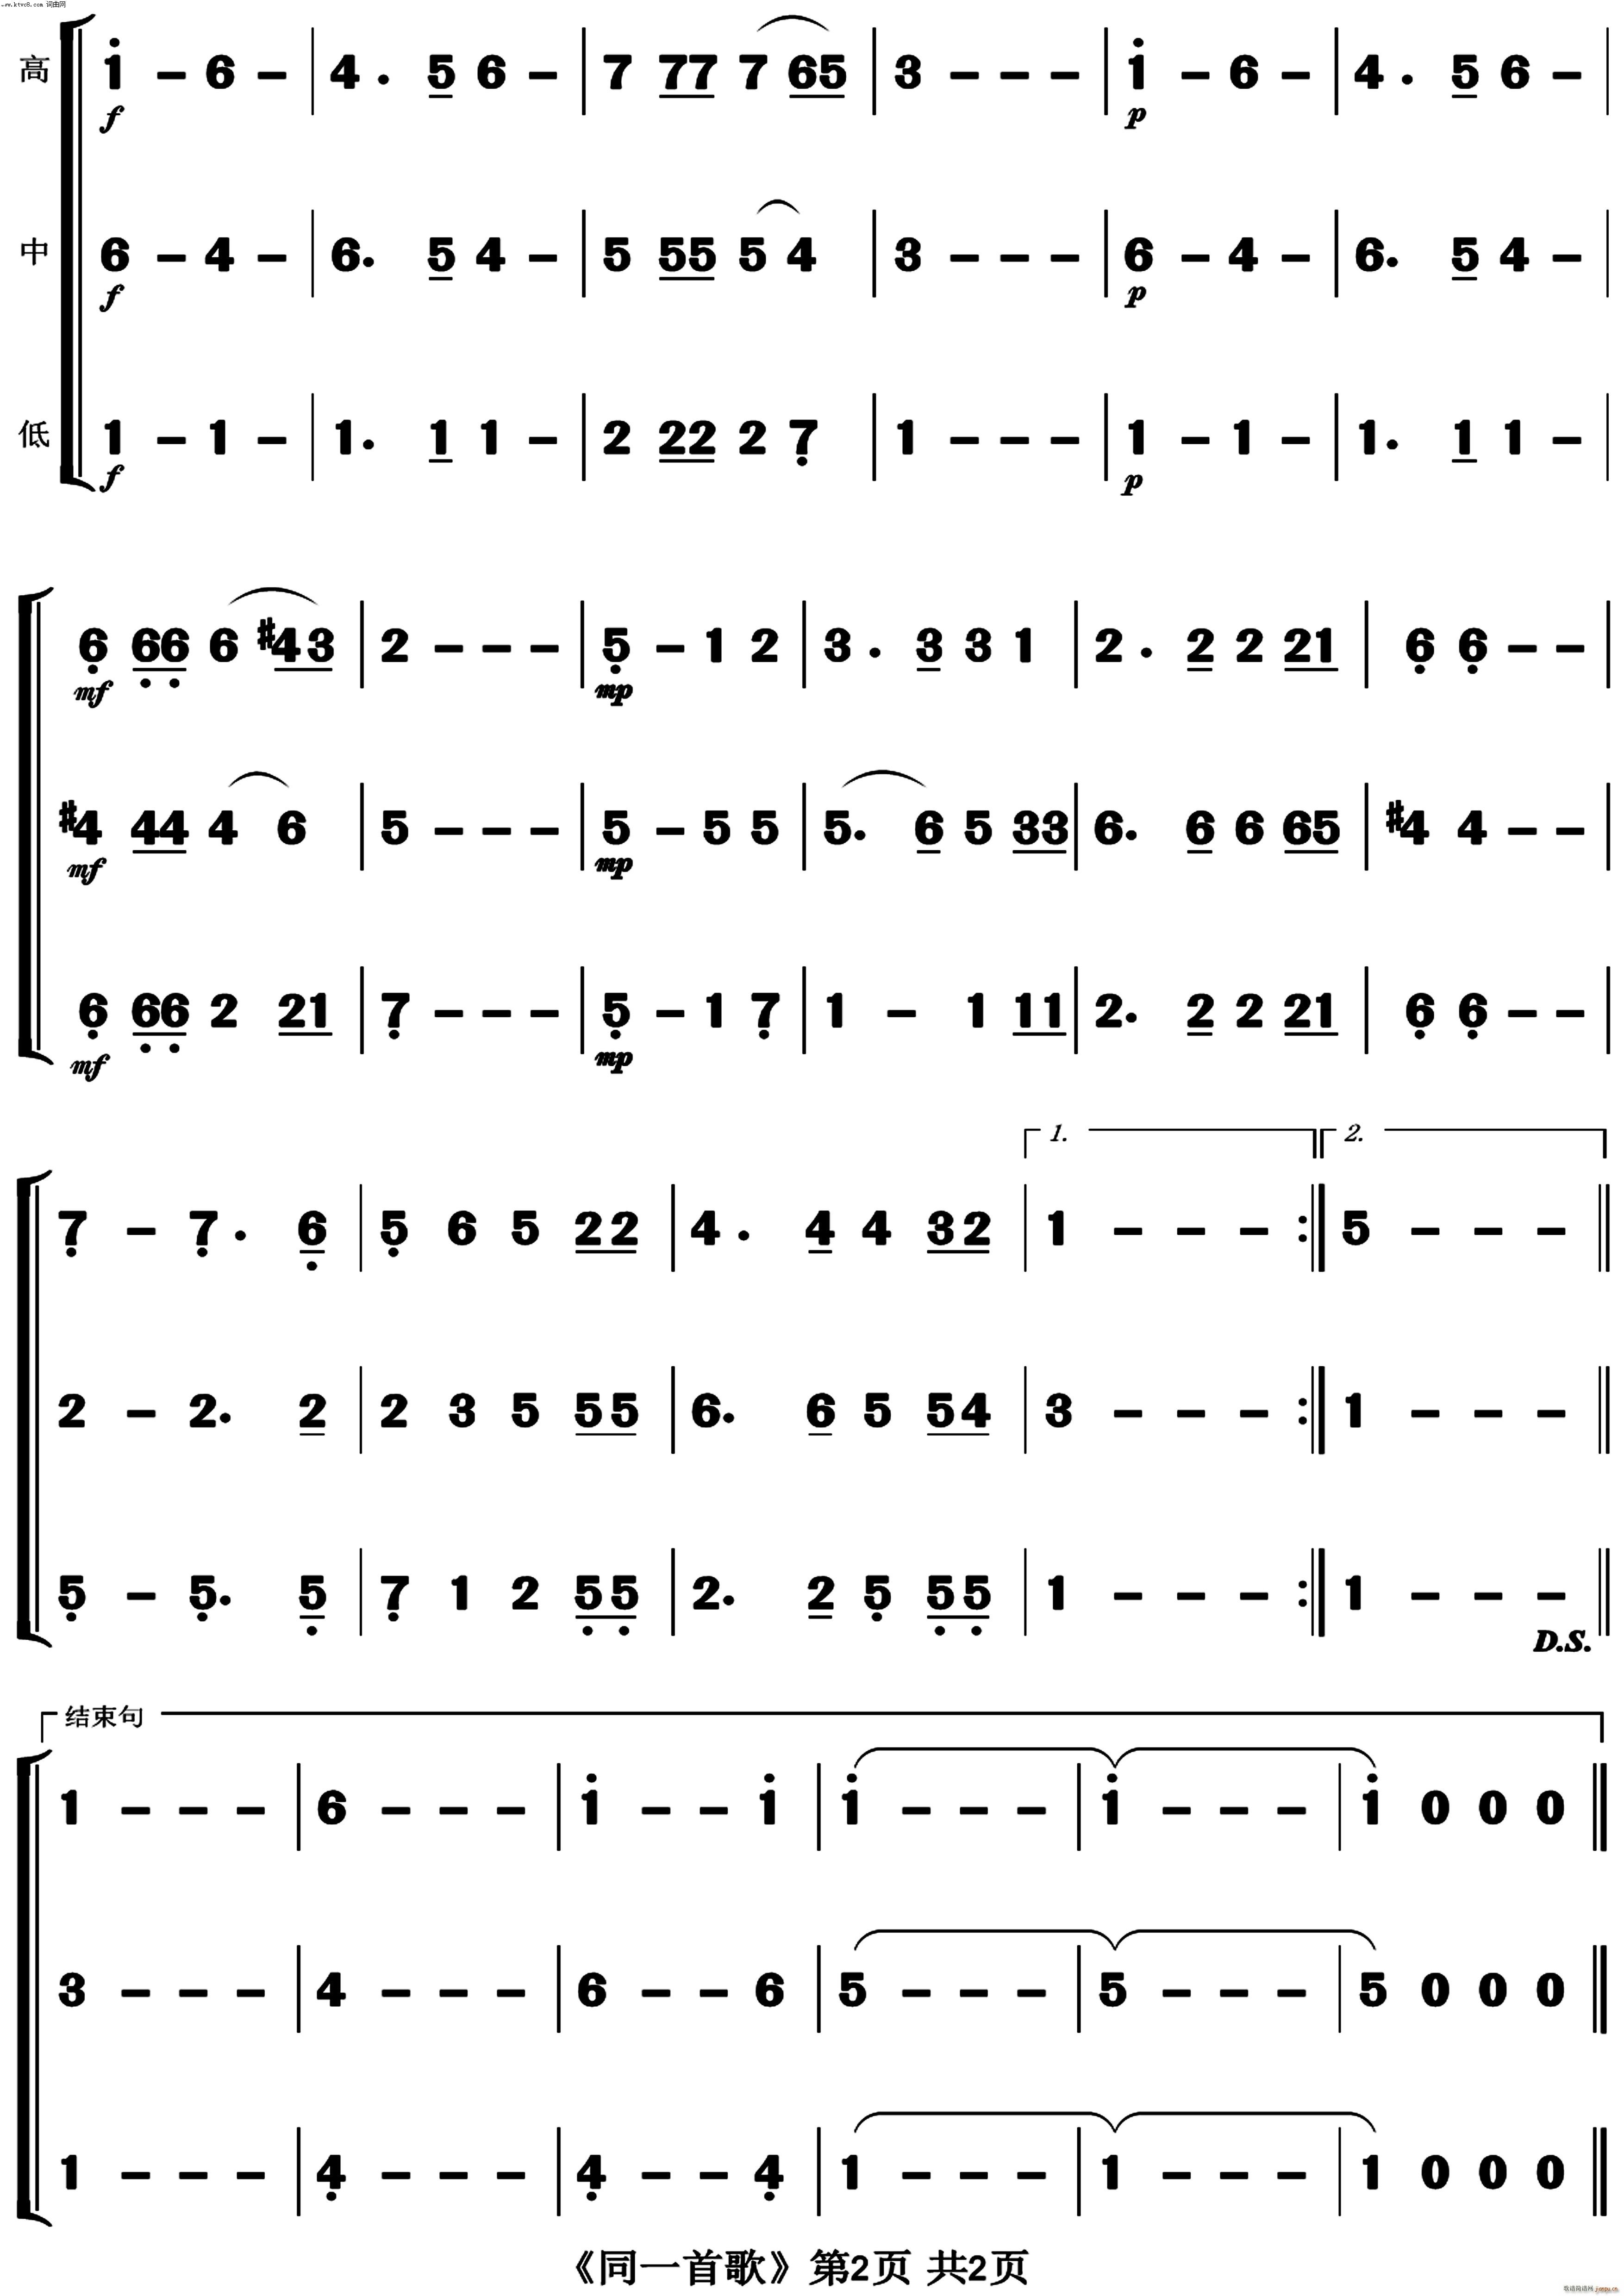 铜管乐合奏曲谱图片